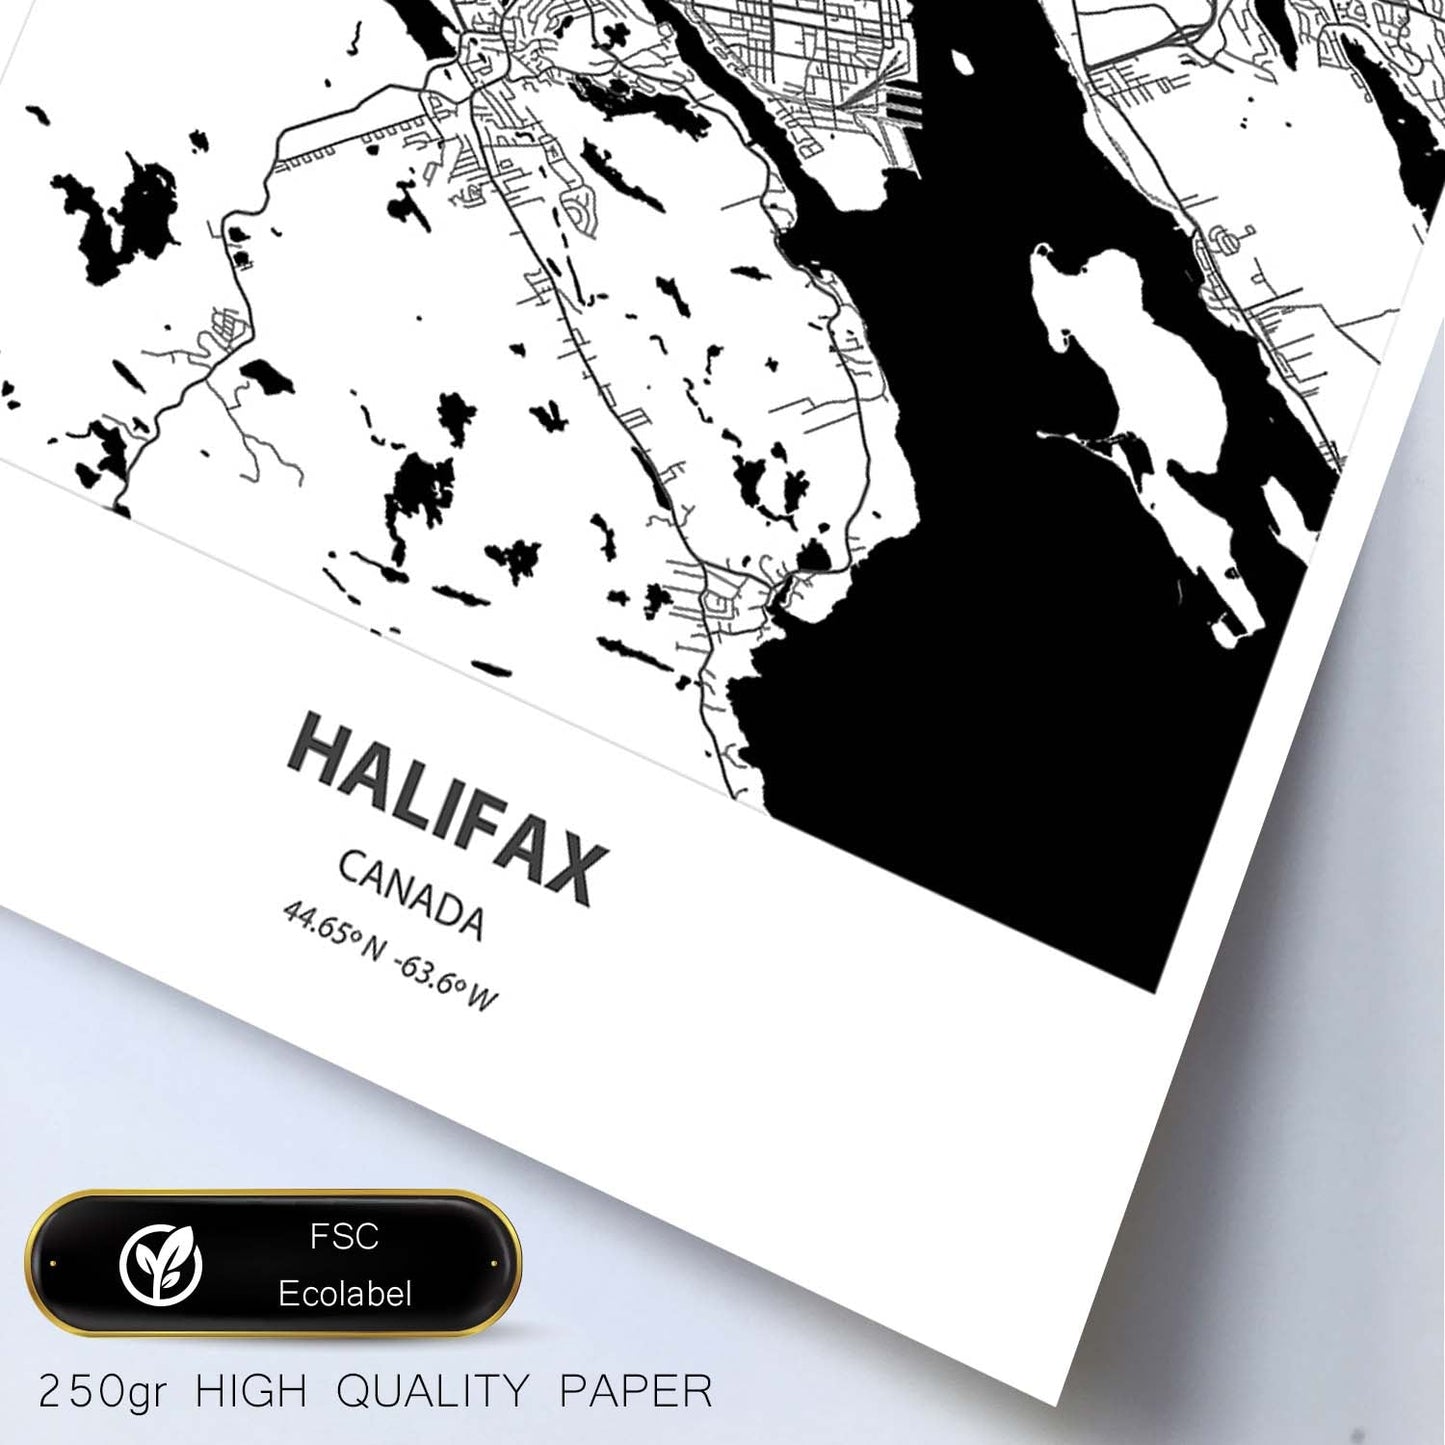 Poster con mapa de Halifax - Canada. Láminas de ciudades de Canada con mares y ríos en color negro.-Artwork-Nacnic-Nacnic Estudio SL